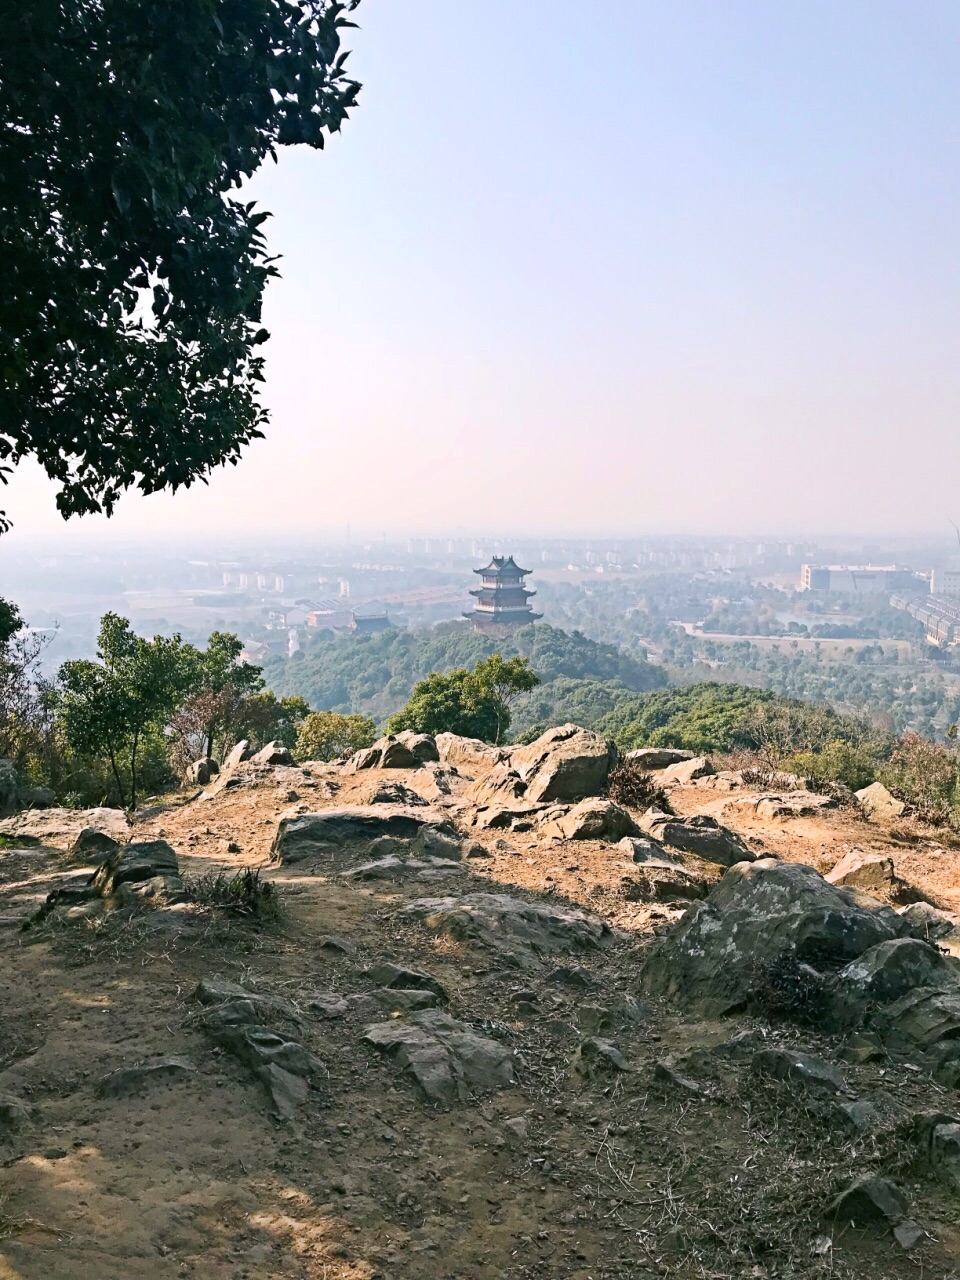 土路低矮的台阶爬上山顶看到永庆寺凤凰湖风景一般一侧下山大片墓区